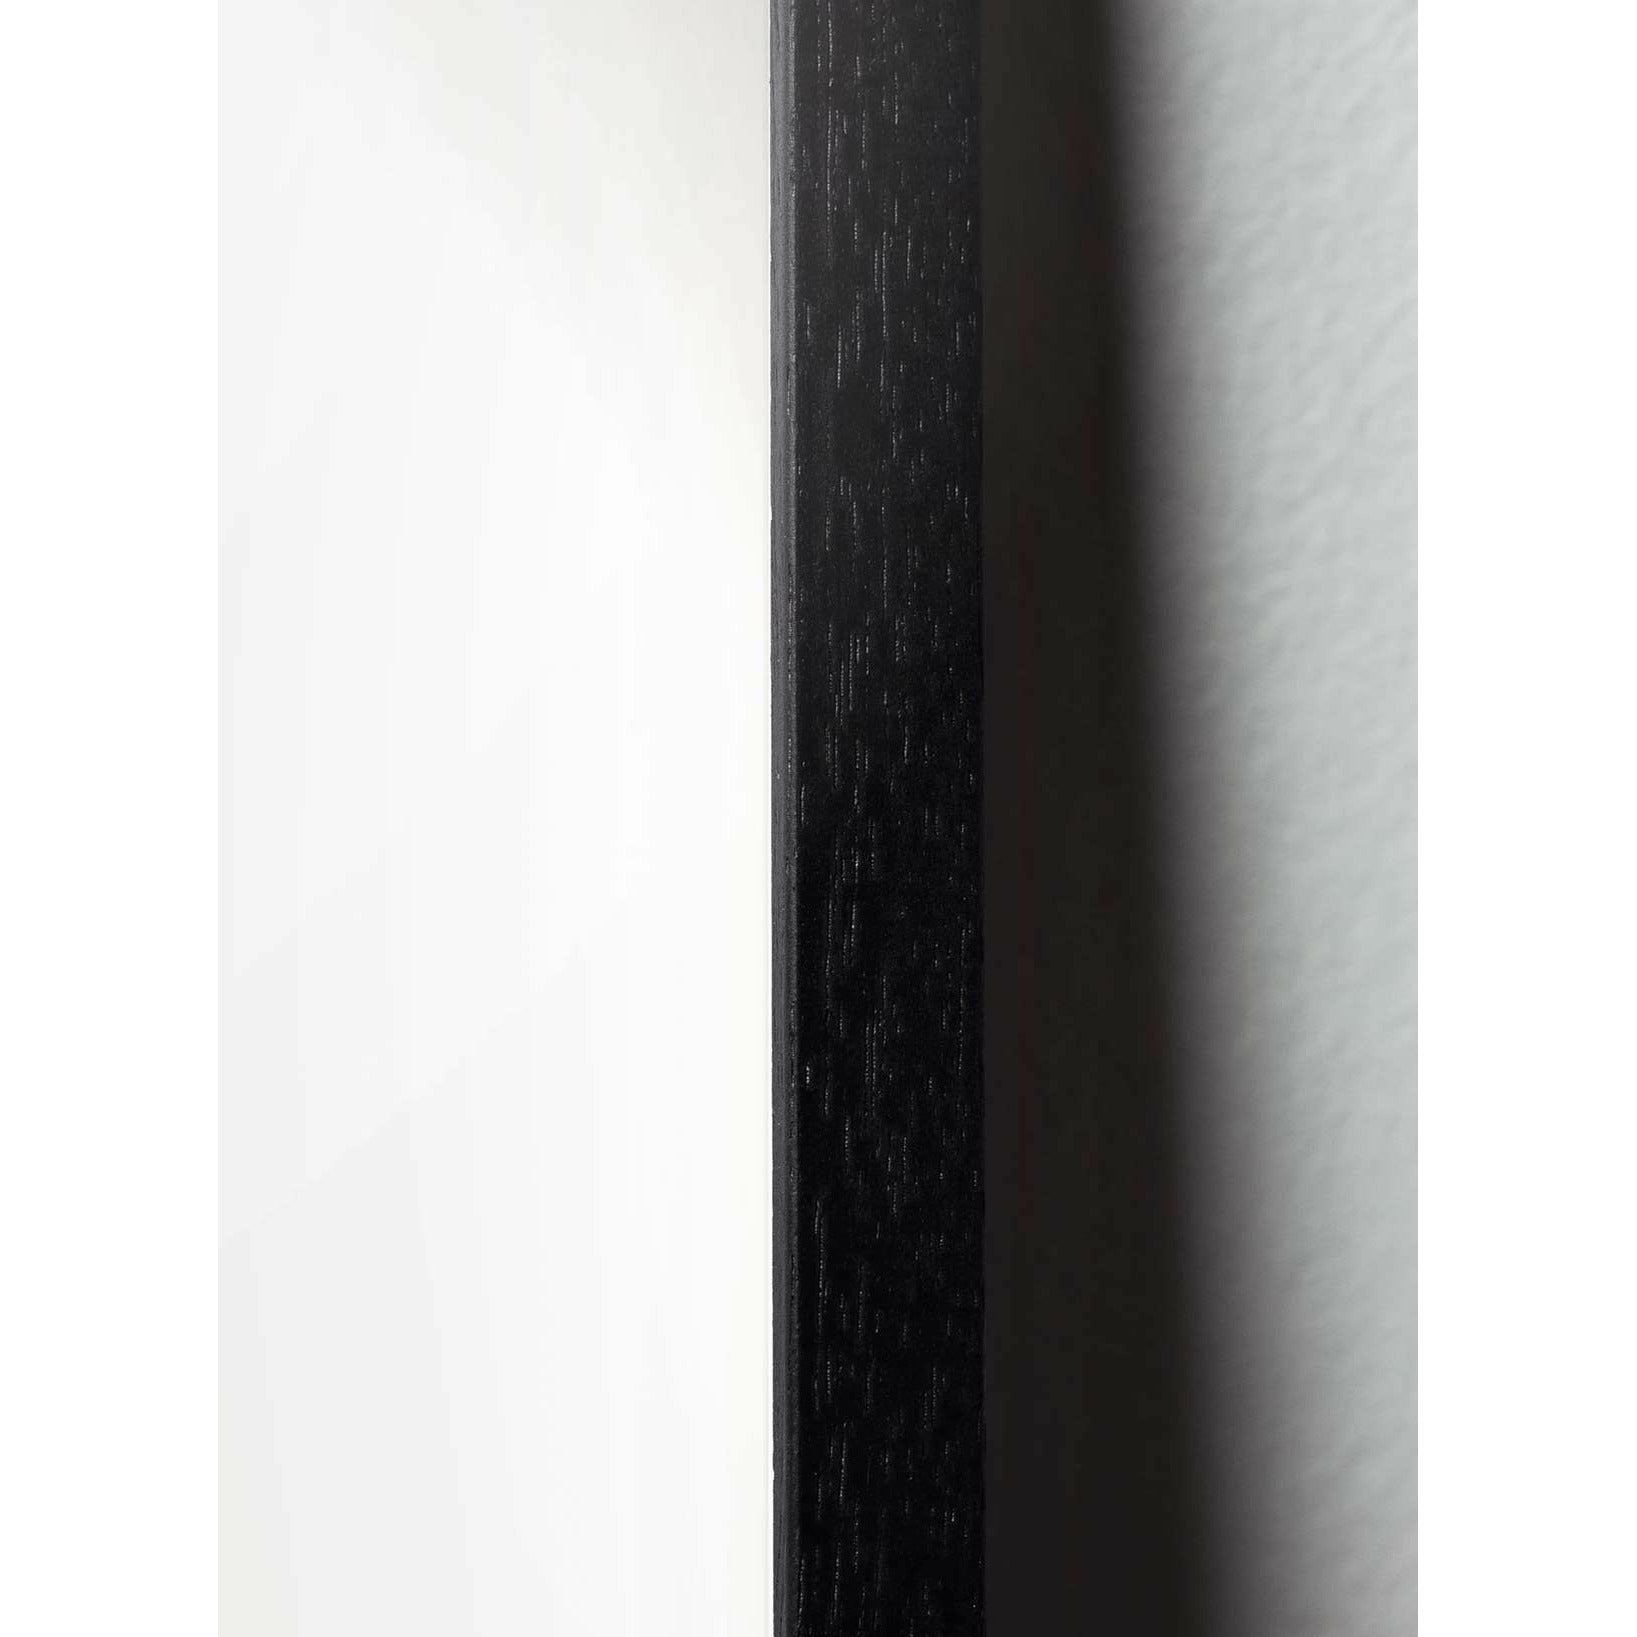 Pomysły plakat linii stożkowej, rama w czarnym lakierowanym drewnie 50x70 cm, białe tło